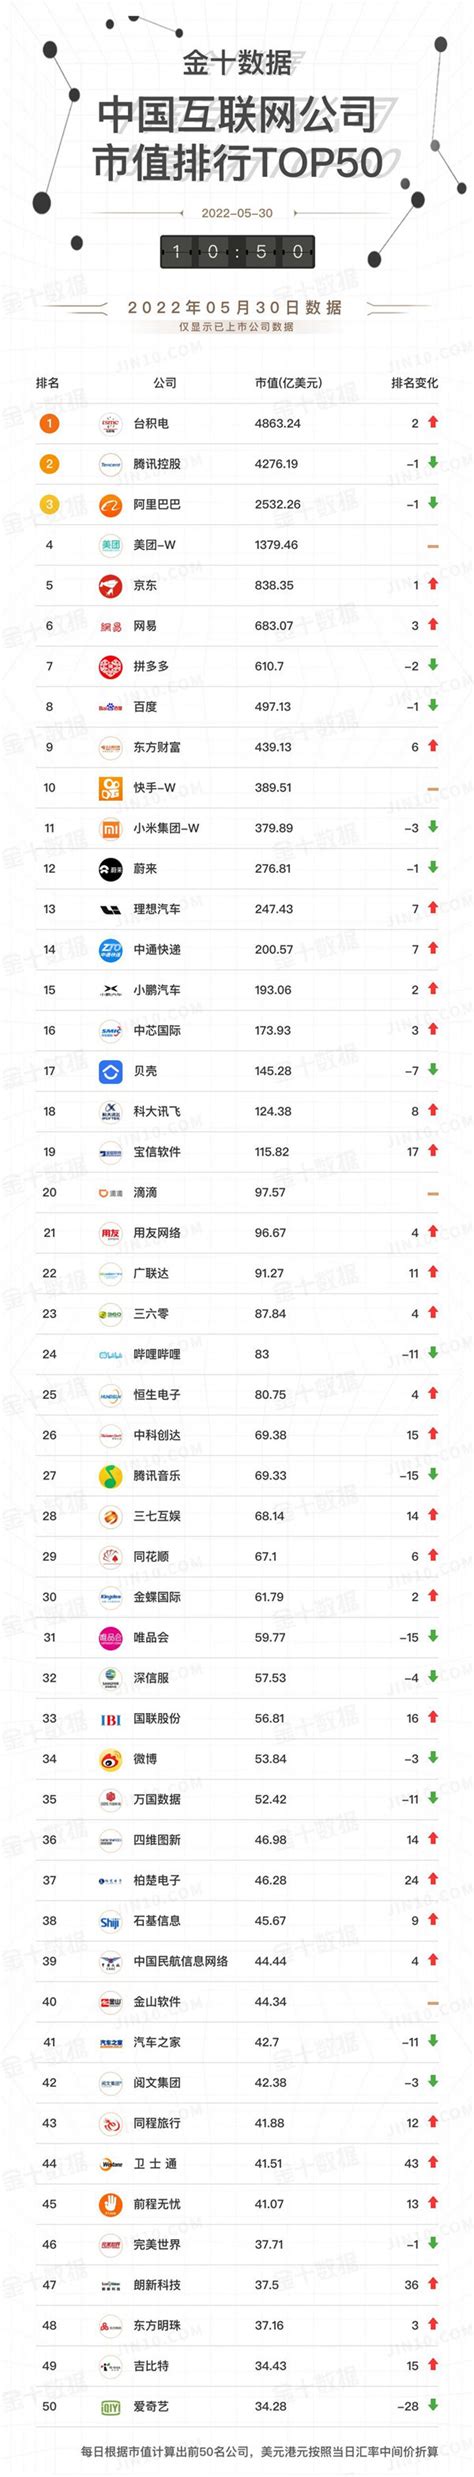 中国互联网TOP10公司占全行业77.4%， 腾讯 阿里 成为两极，和美团三家市值占整个互联网行业54.6%：1.最近，... - 雪球